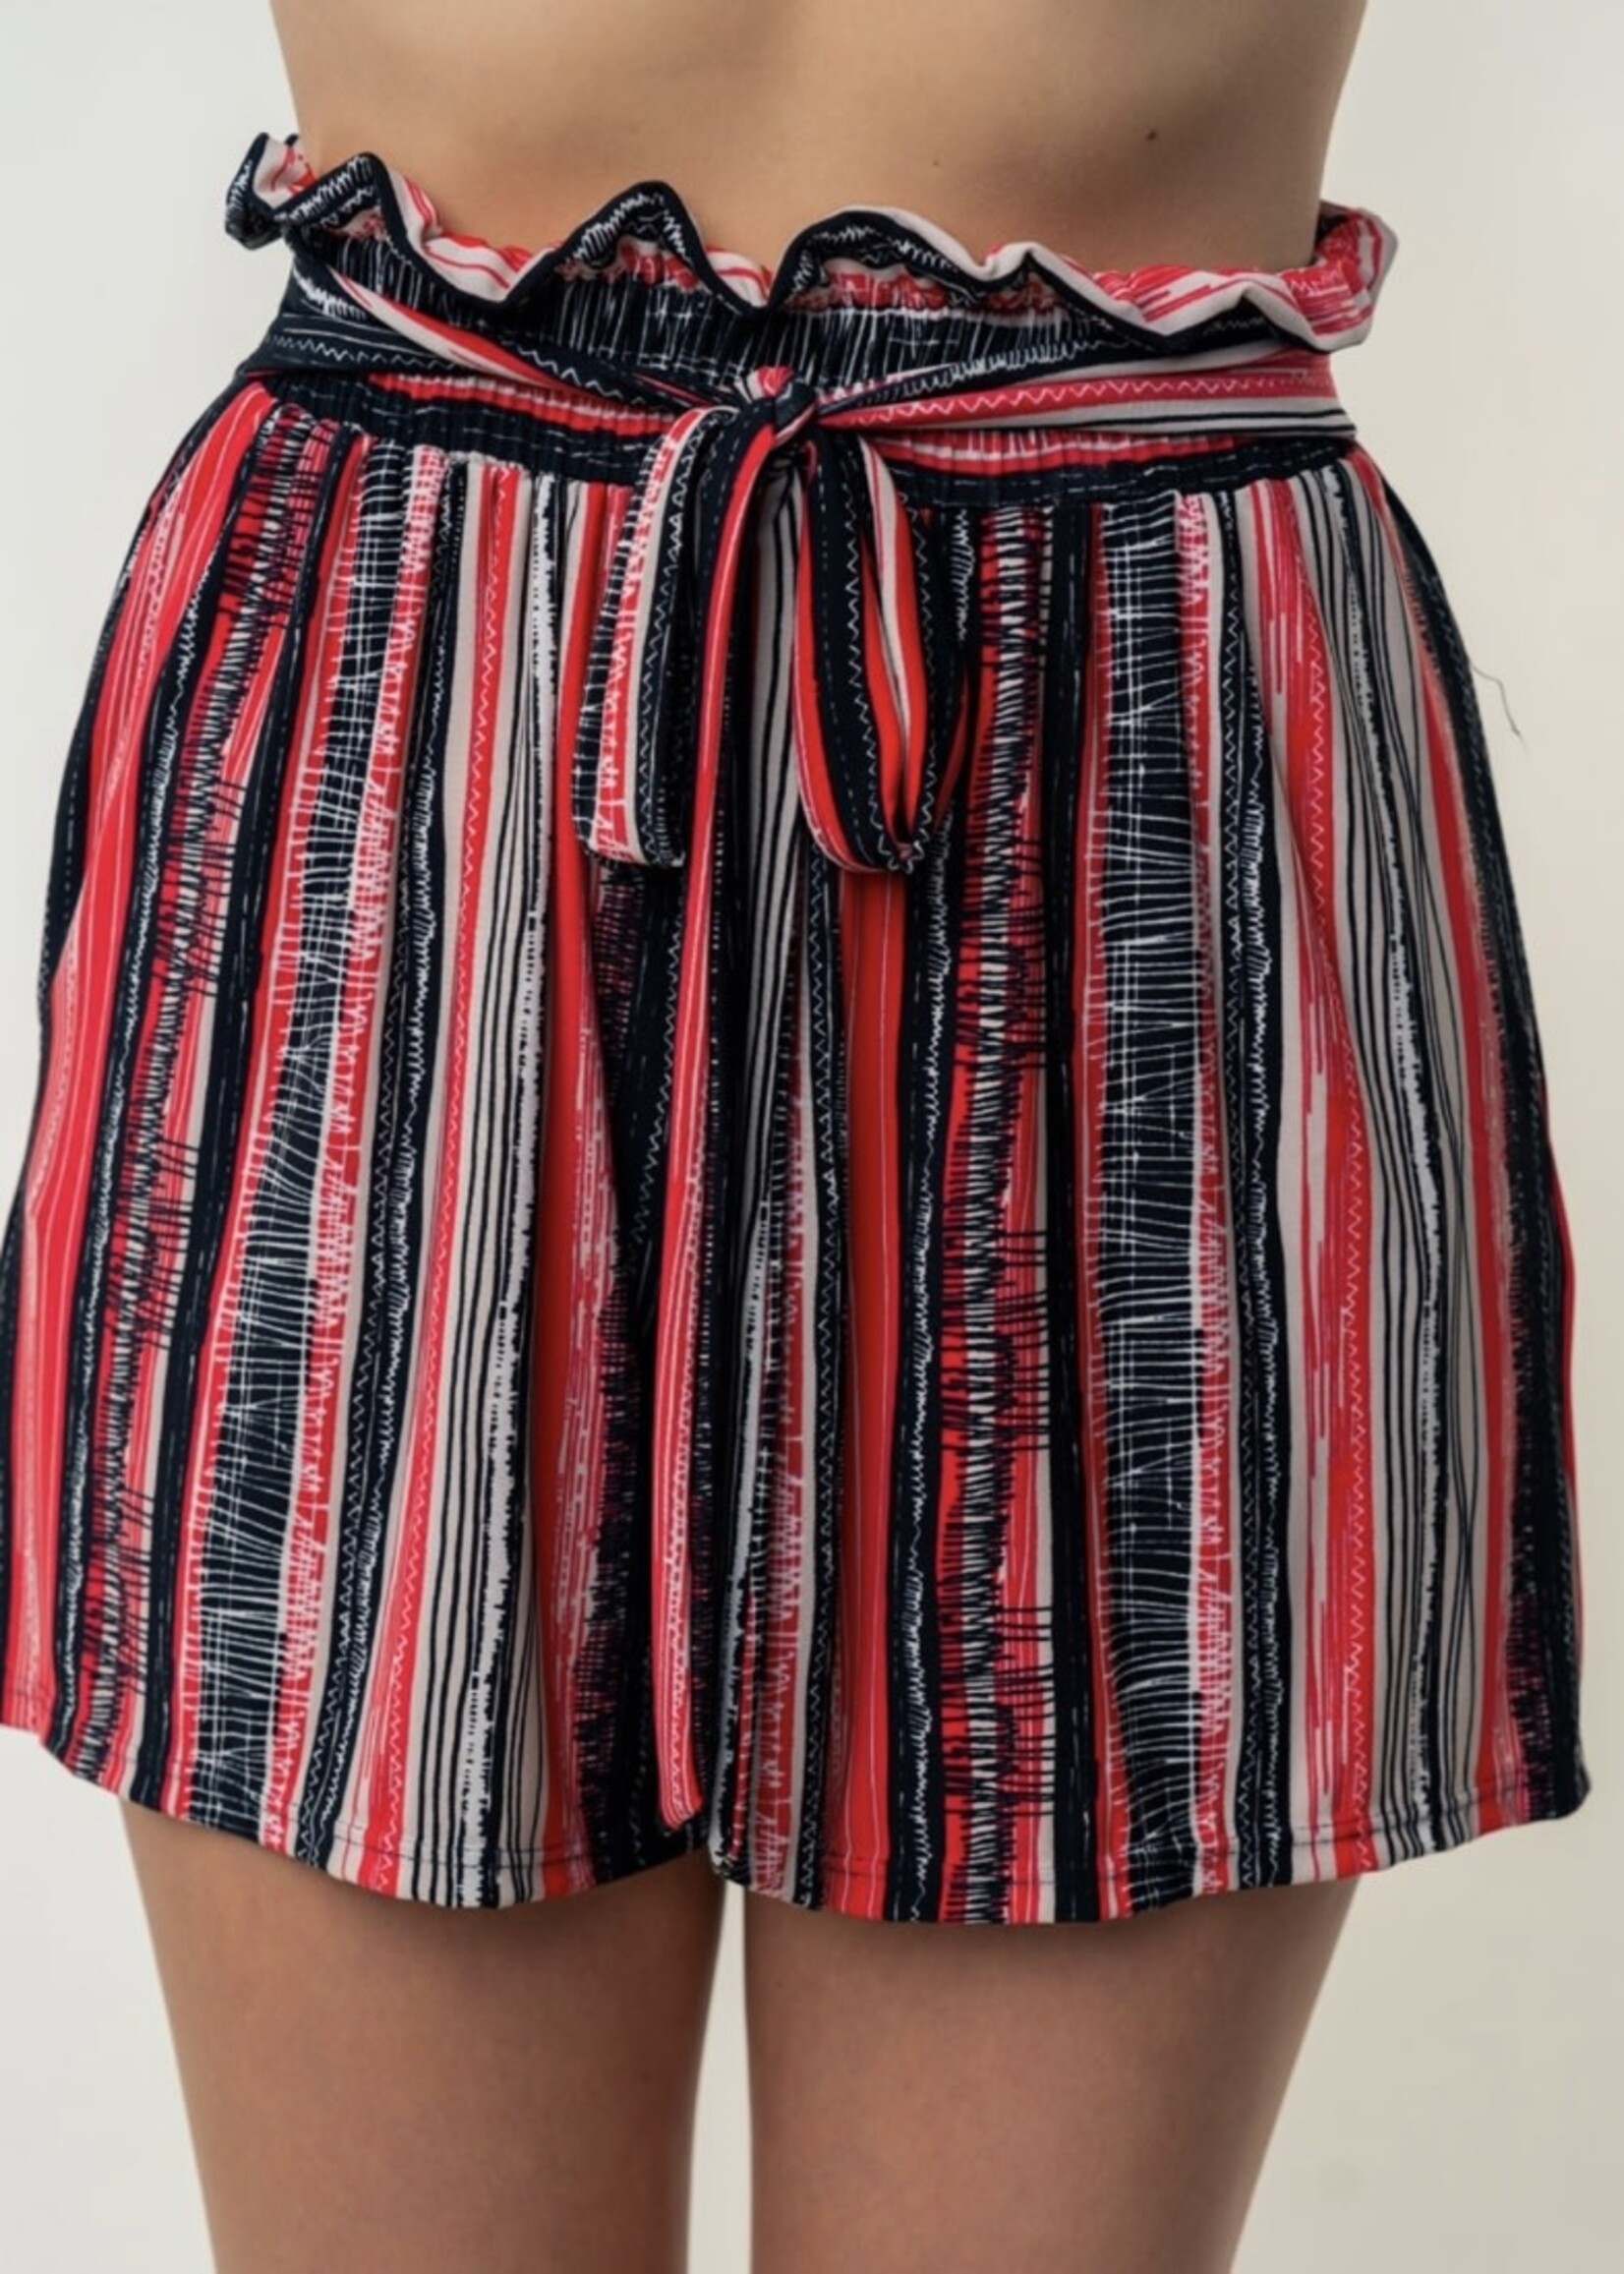 Harmony Striped Shorts